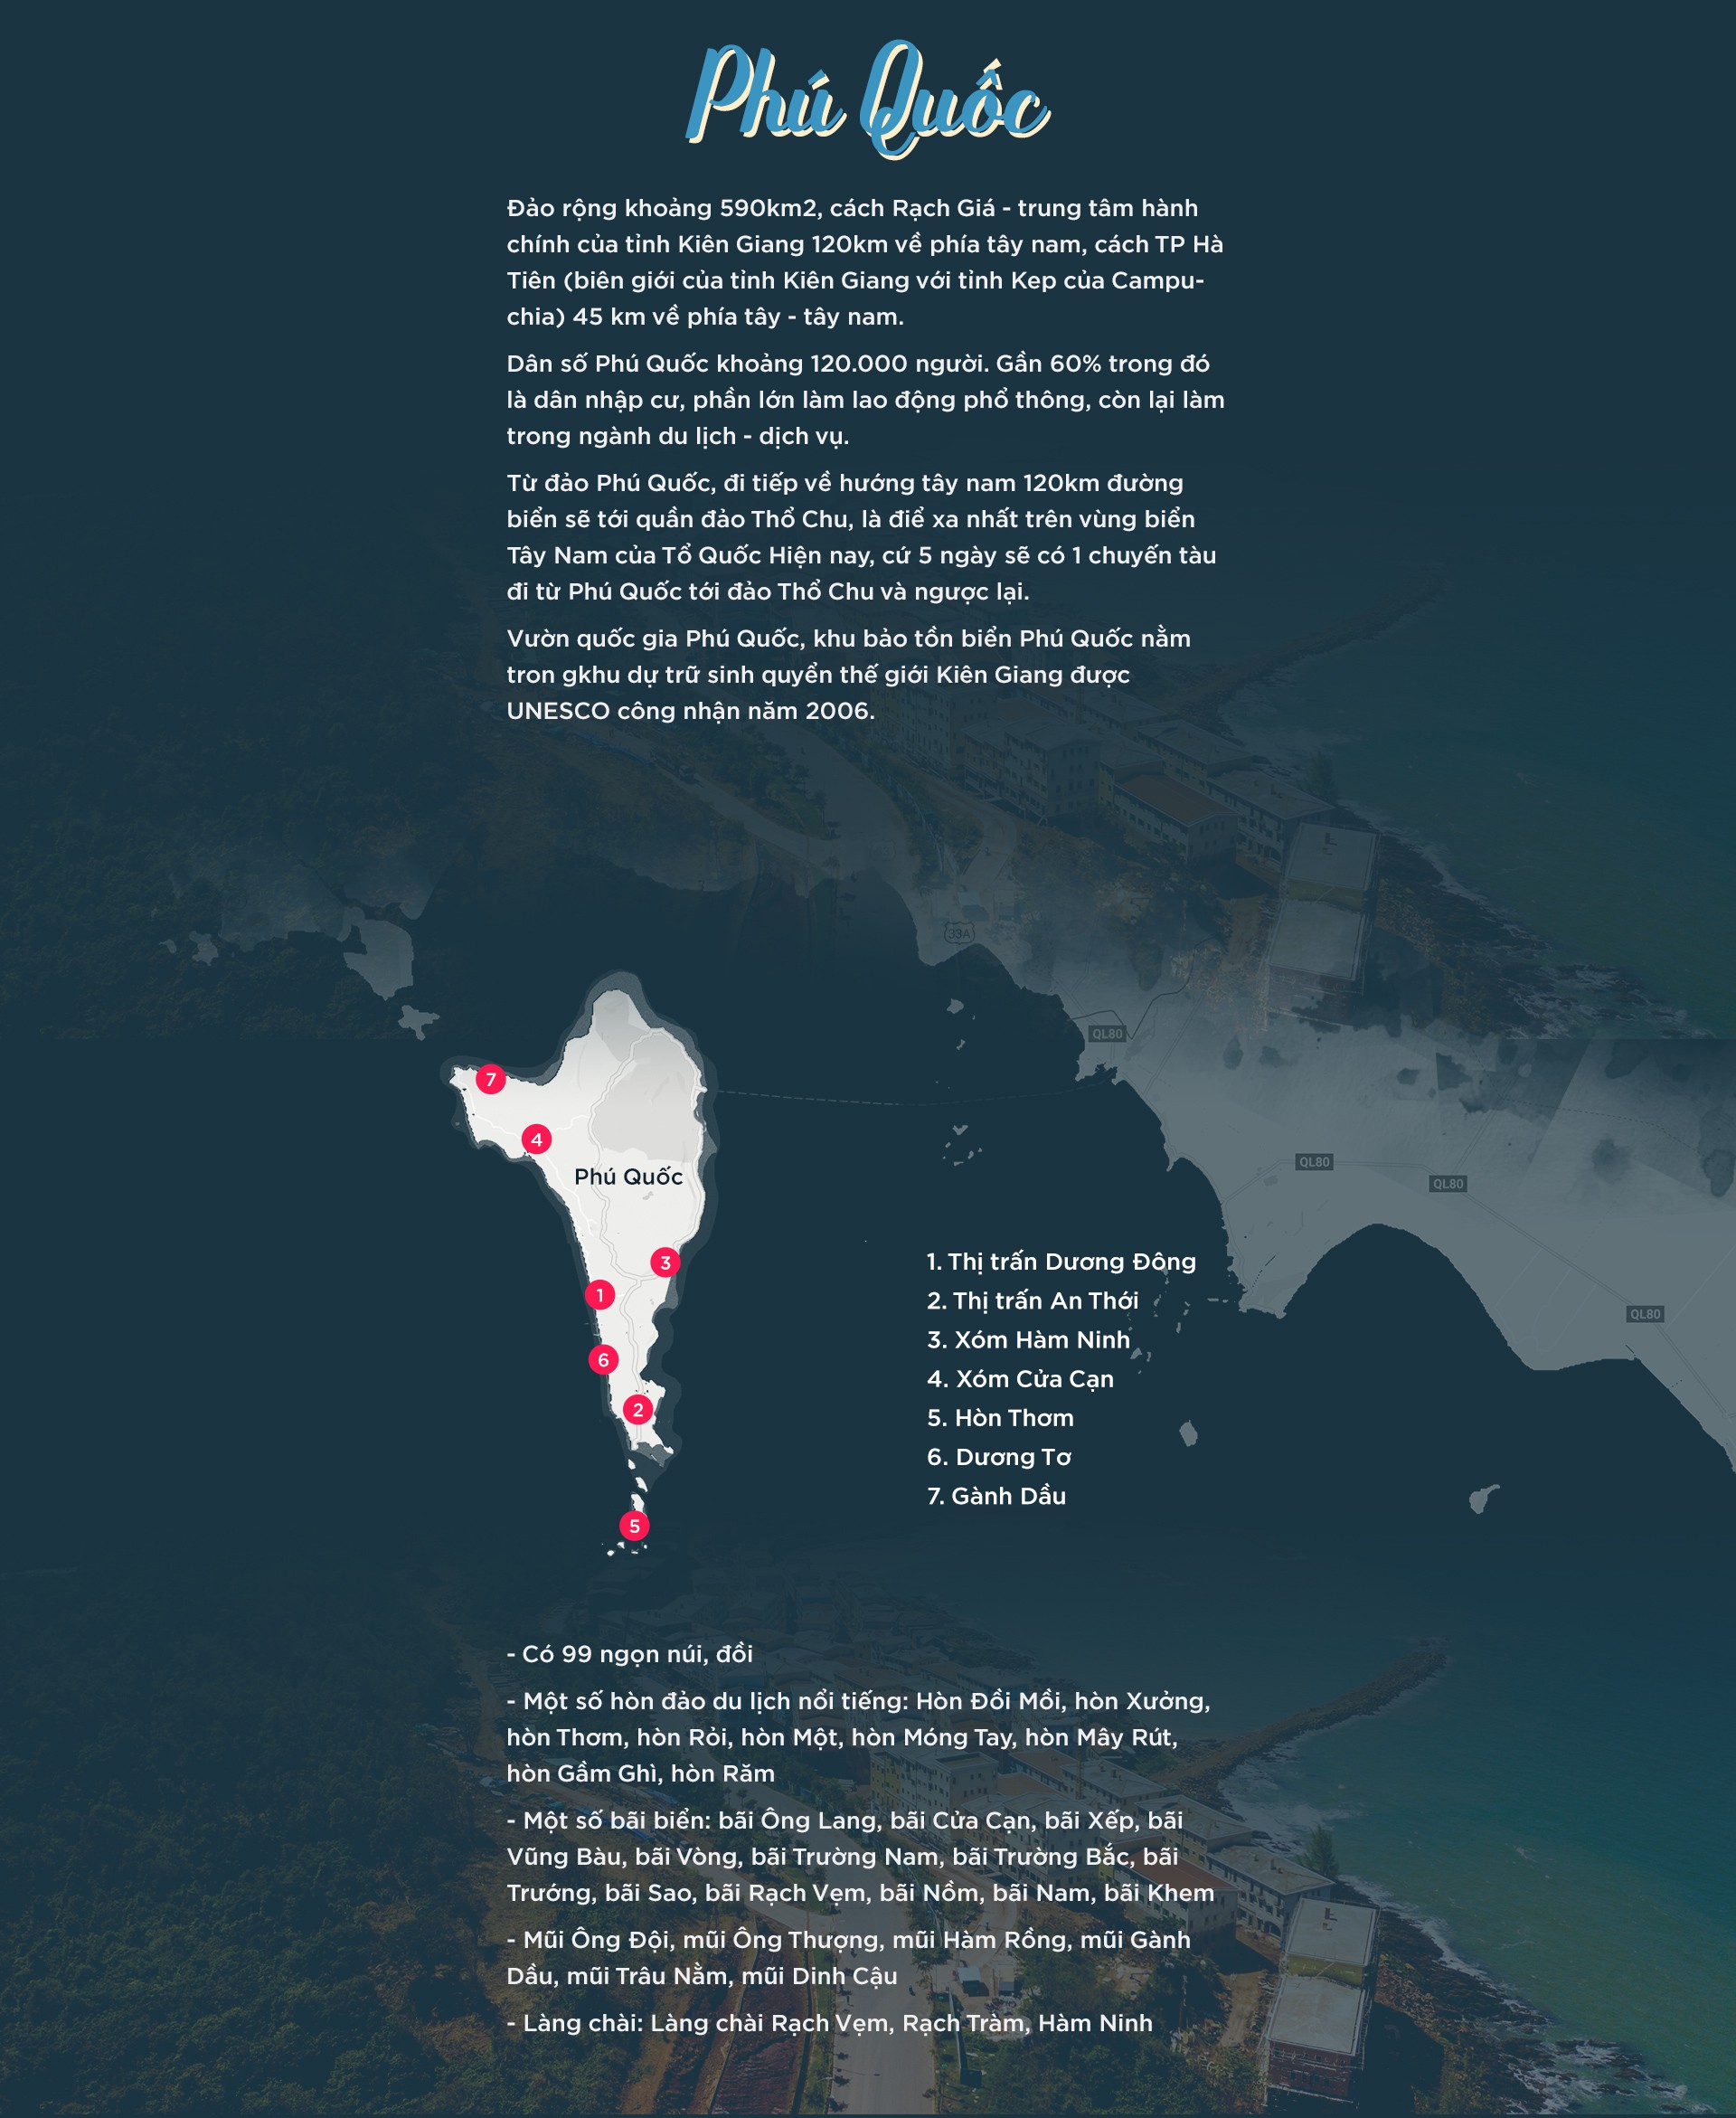 Thông tin về đảo ngọc Phú Quốc chạm tay vào "đảo ngọc" phú quốc - Thông-tin-về-đảo-ngọc-Phú-Quốc - Cùng trải nghiệm &#8211; chạm tay vào &#8220;đảo ngọc&#8221; Phú Quốc.